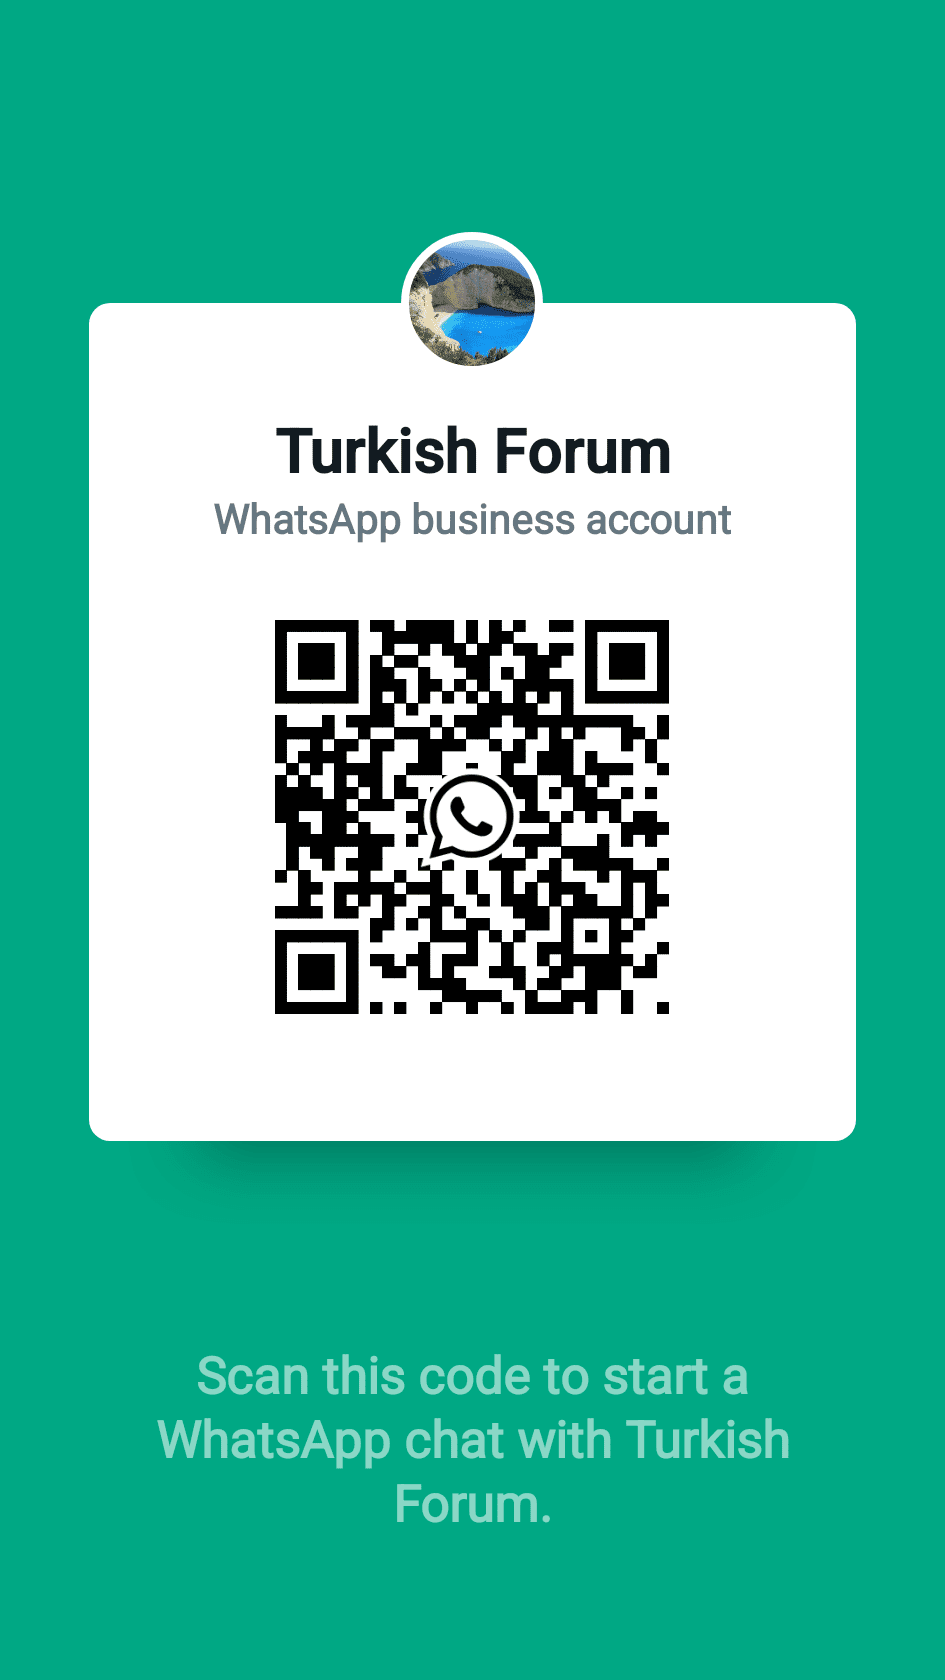 Turkish Forum'a artık whatsapp üzerinden erişebilir, göndermek istediklerinizi gönderebilir, bülten, haber ve duyurularımızı alabilirsiniz. - shared qr code